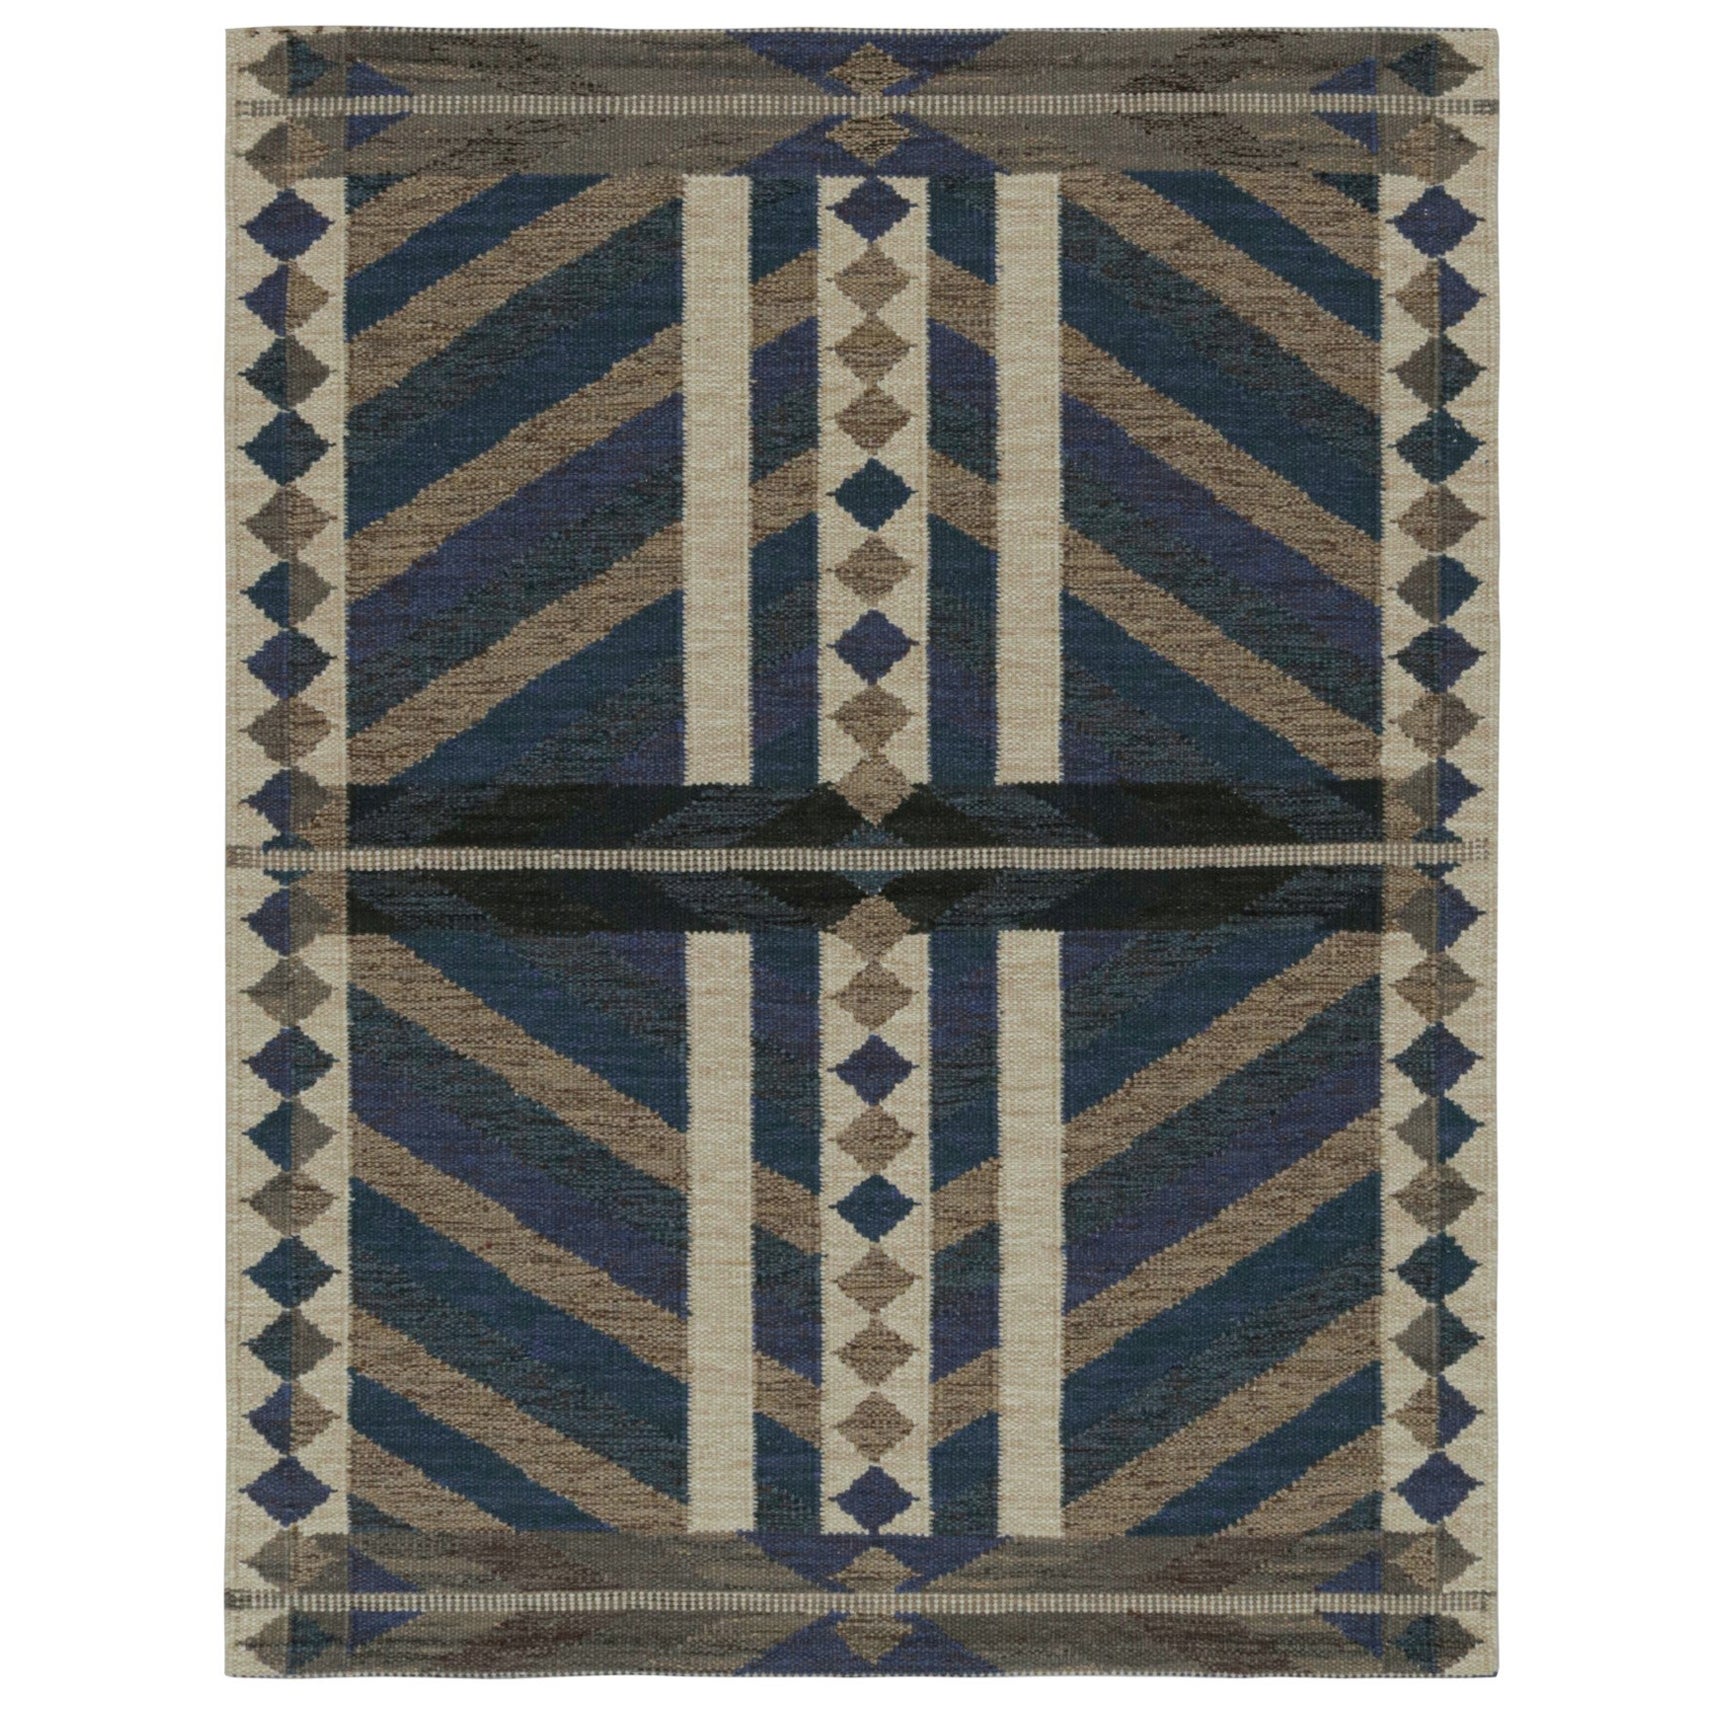 Rug & Kilim’s Scandinavian Style Kilim Rug Design in Beige-Brown Patterns